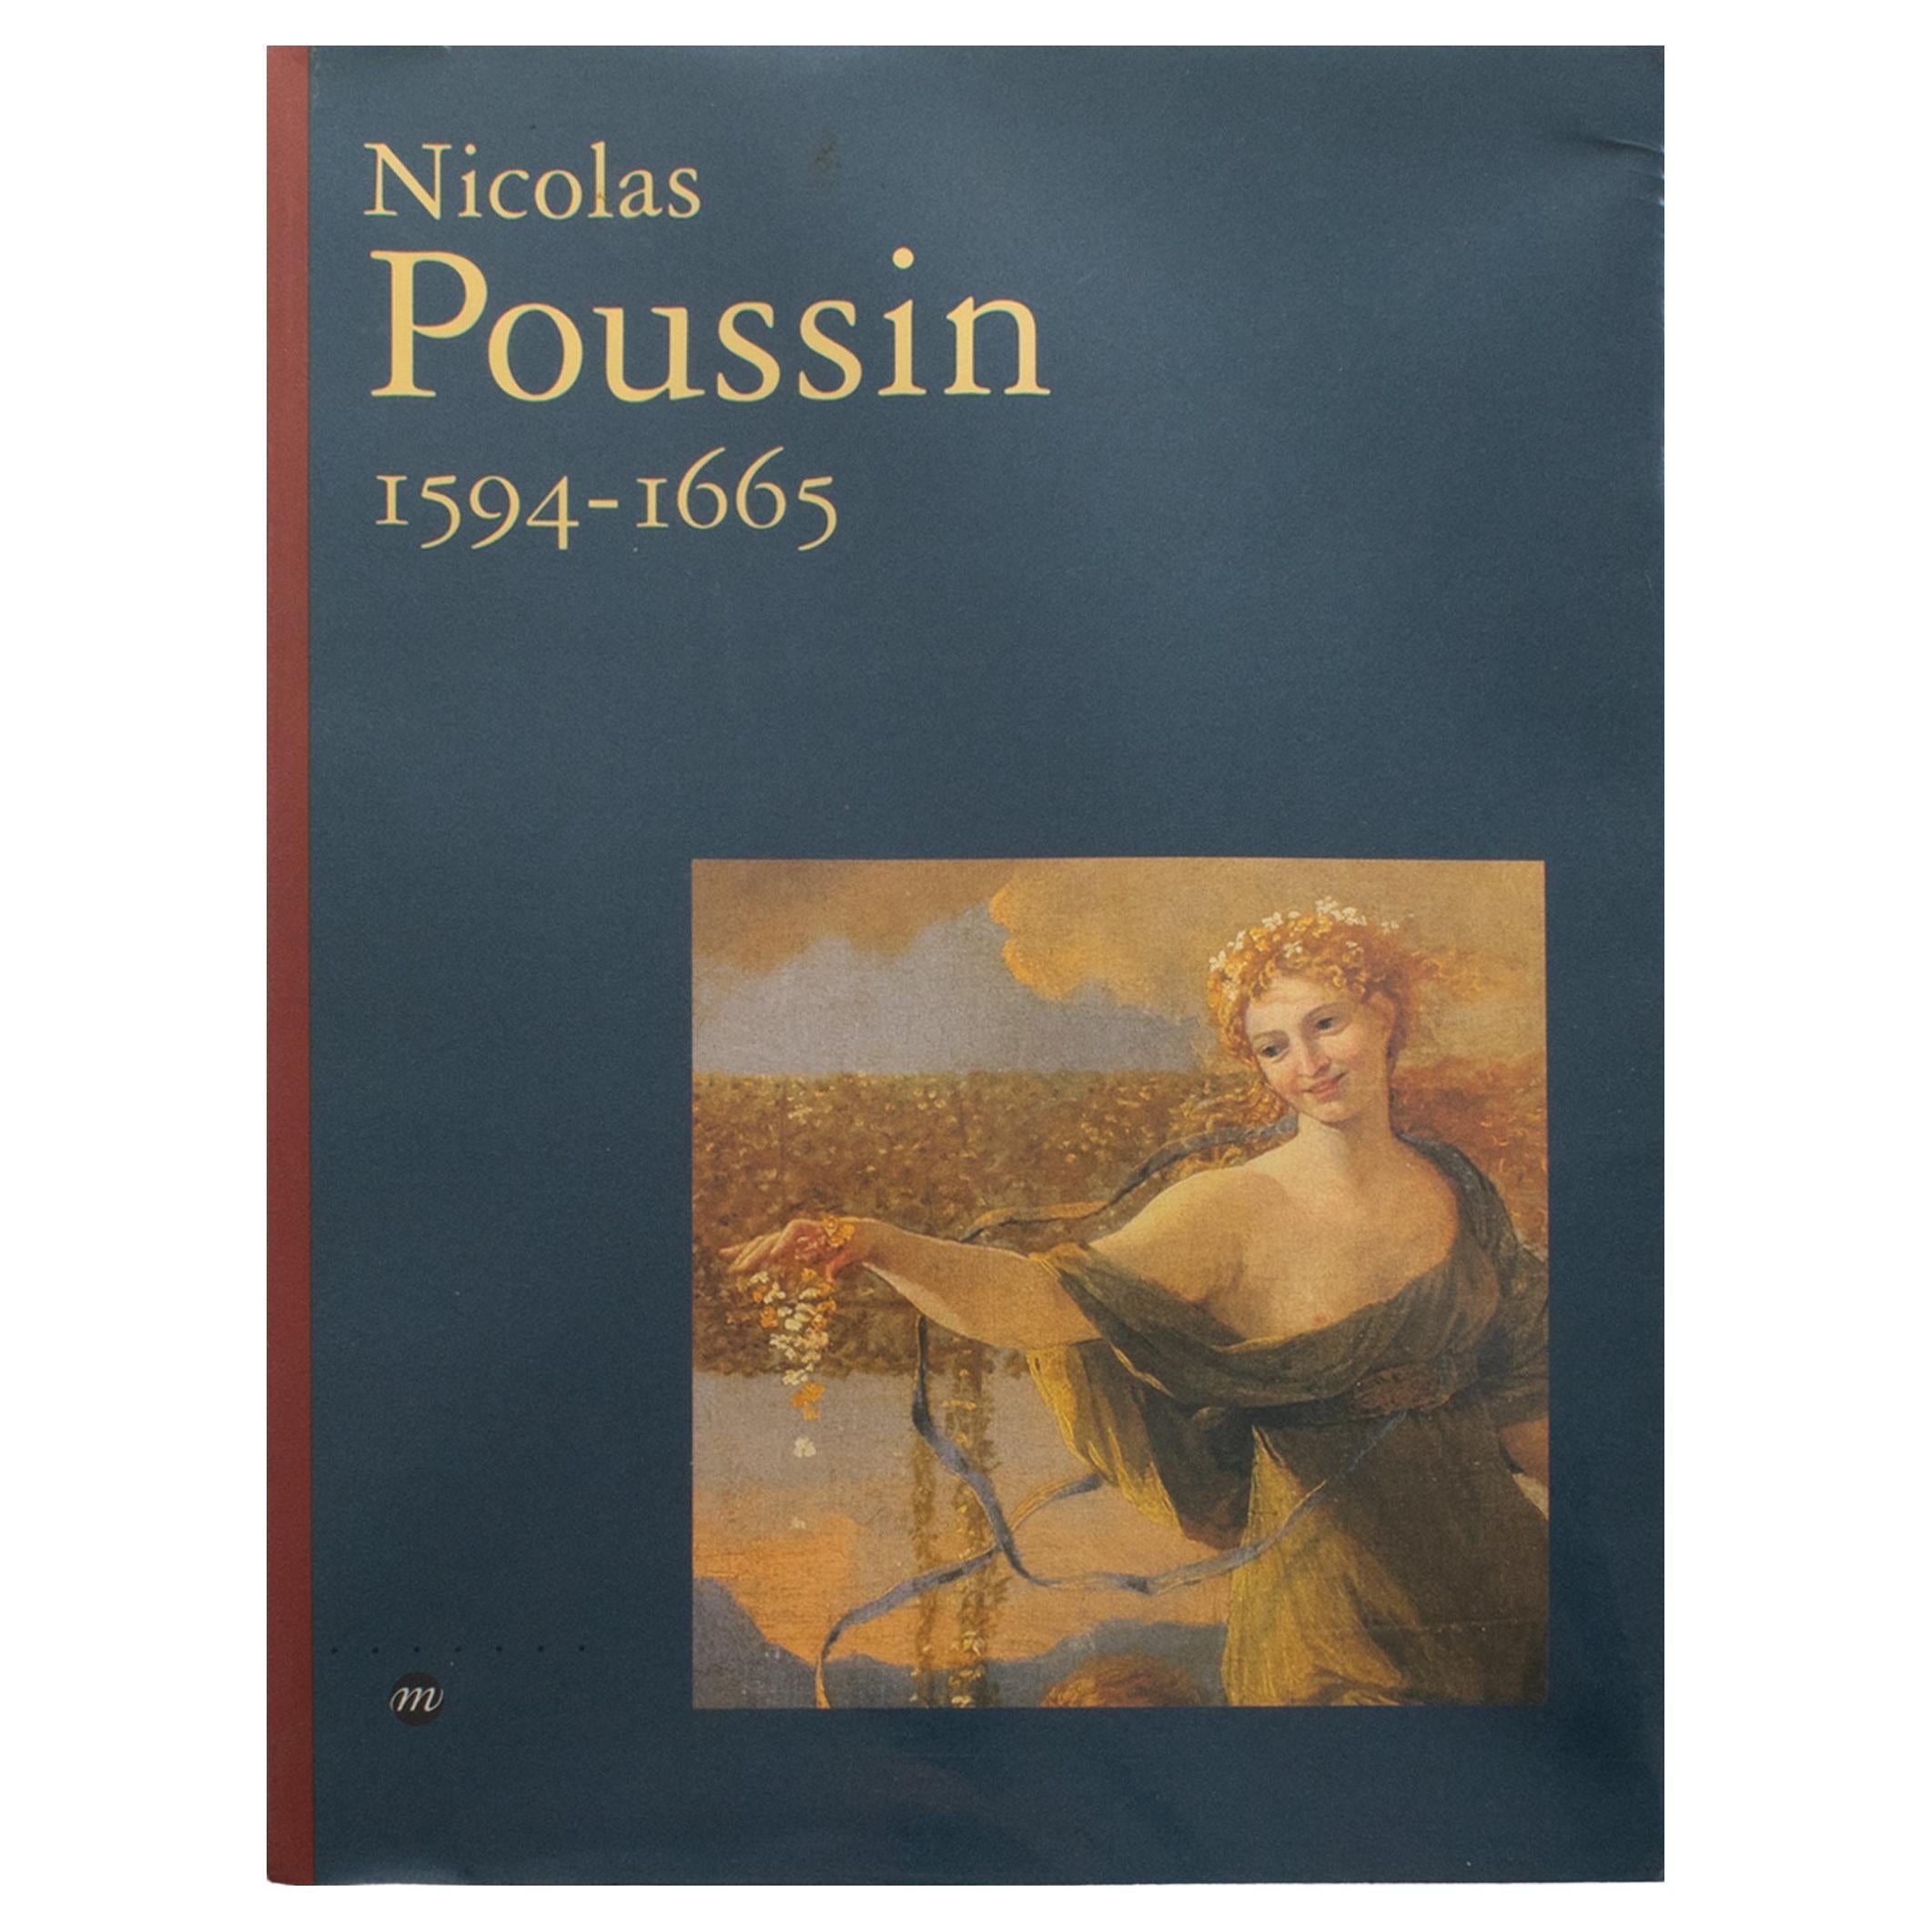 Nicolas Poussin, Französisches Buch von Pierre Rosenberg, 1994